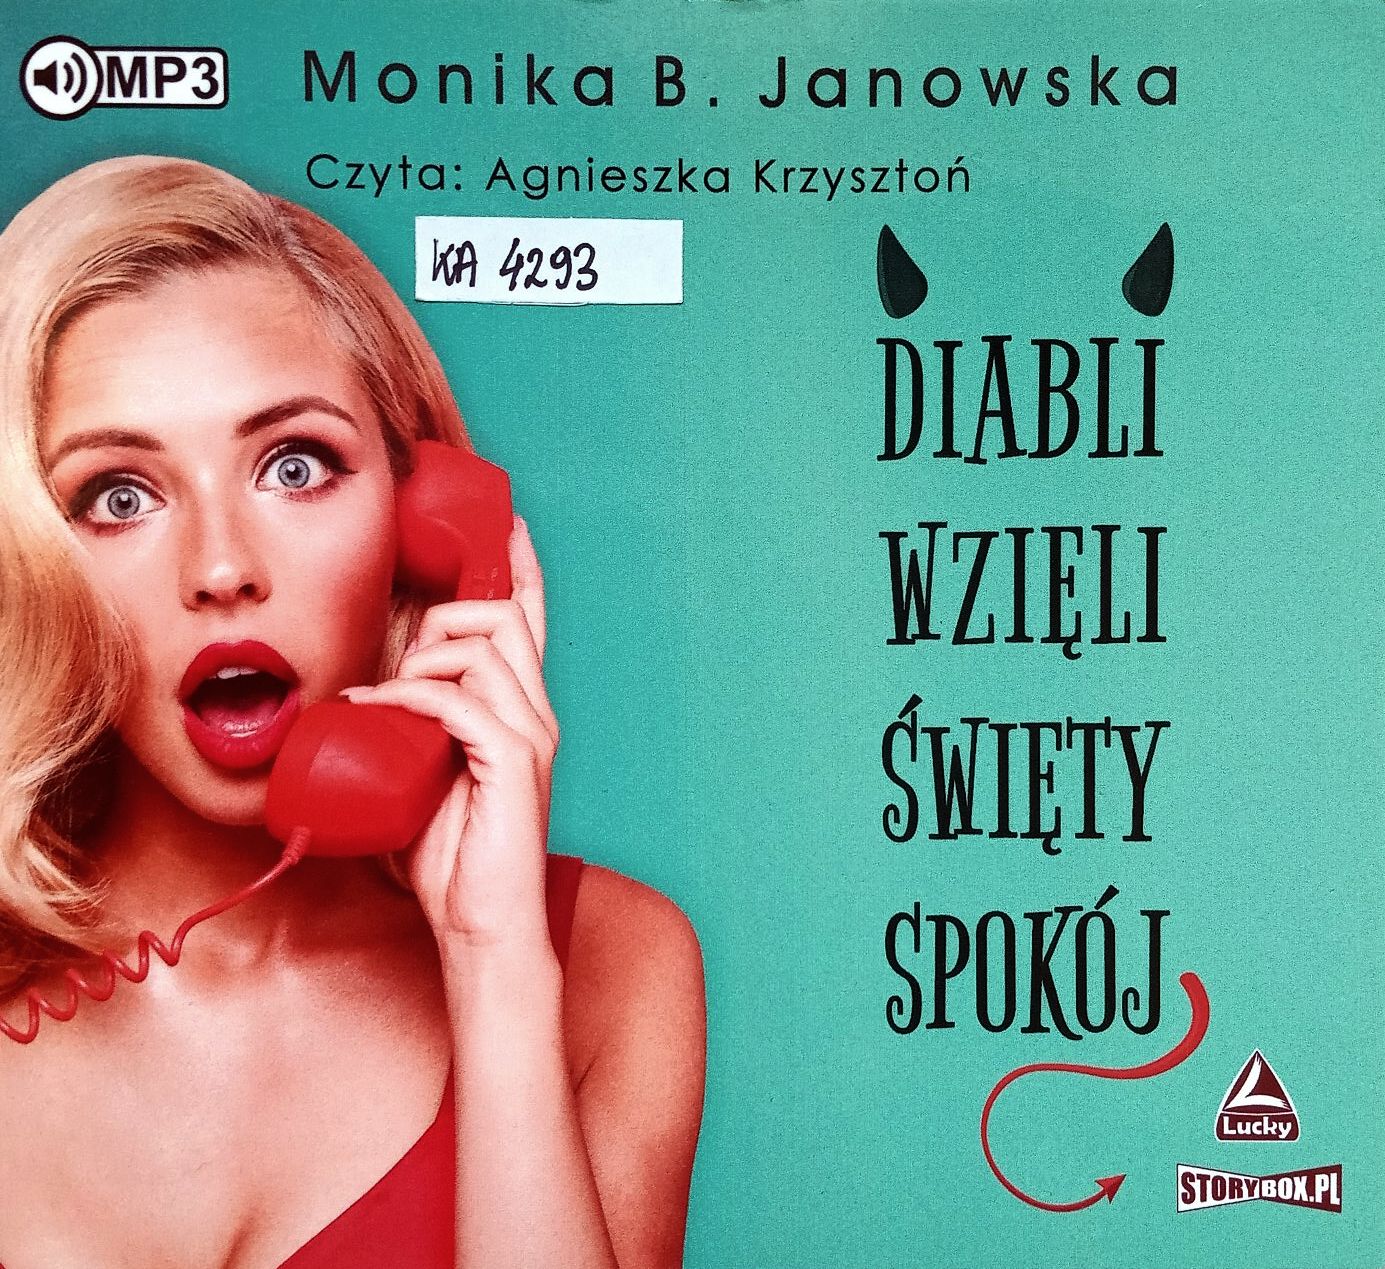 JANOWSKA MONIKA B. - DIABLI WZIĘLI ŚWIĘTY SPOKÓJ